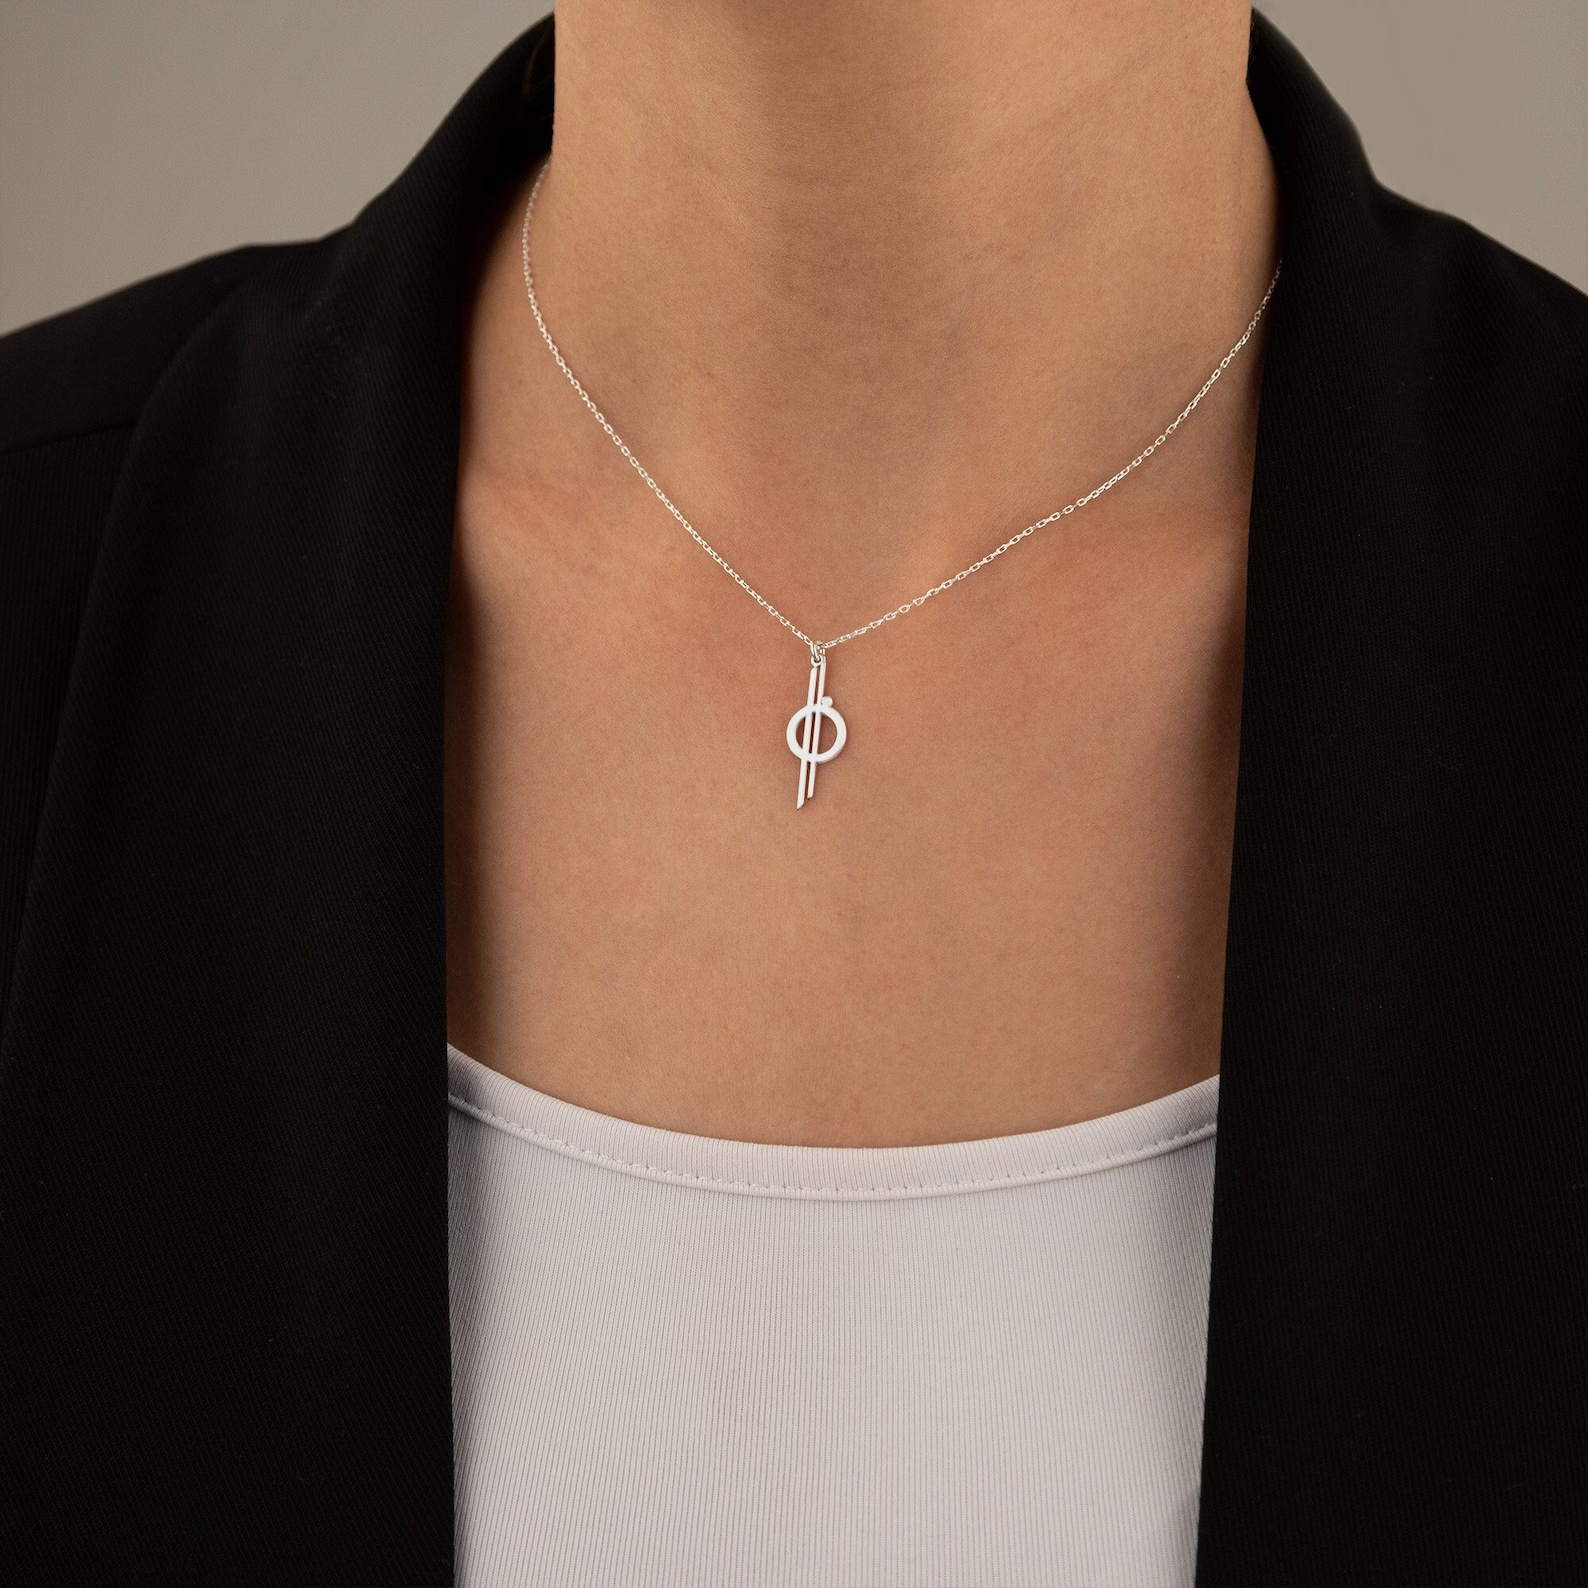 A silver minimalistic Halycon star cruiser necklace